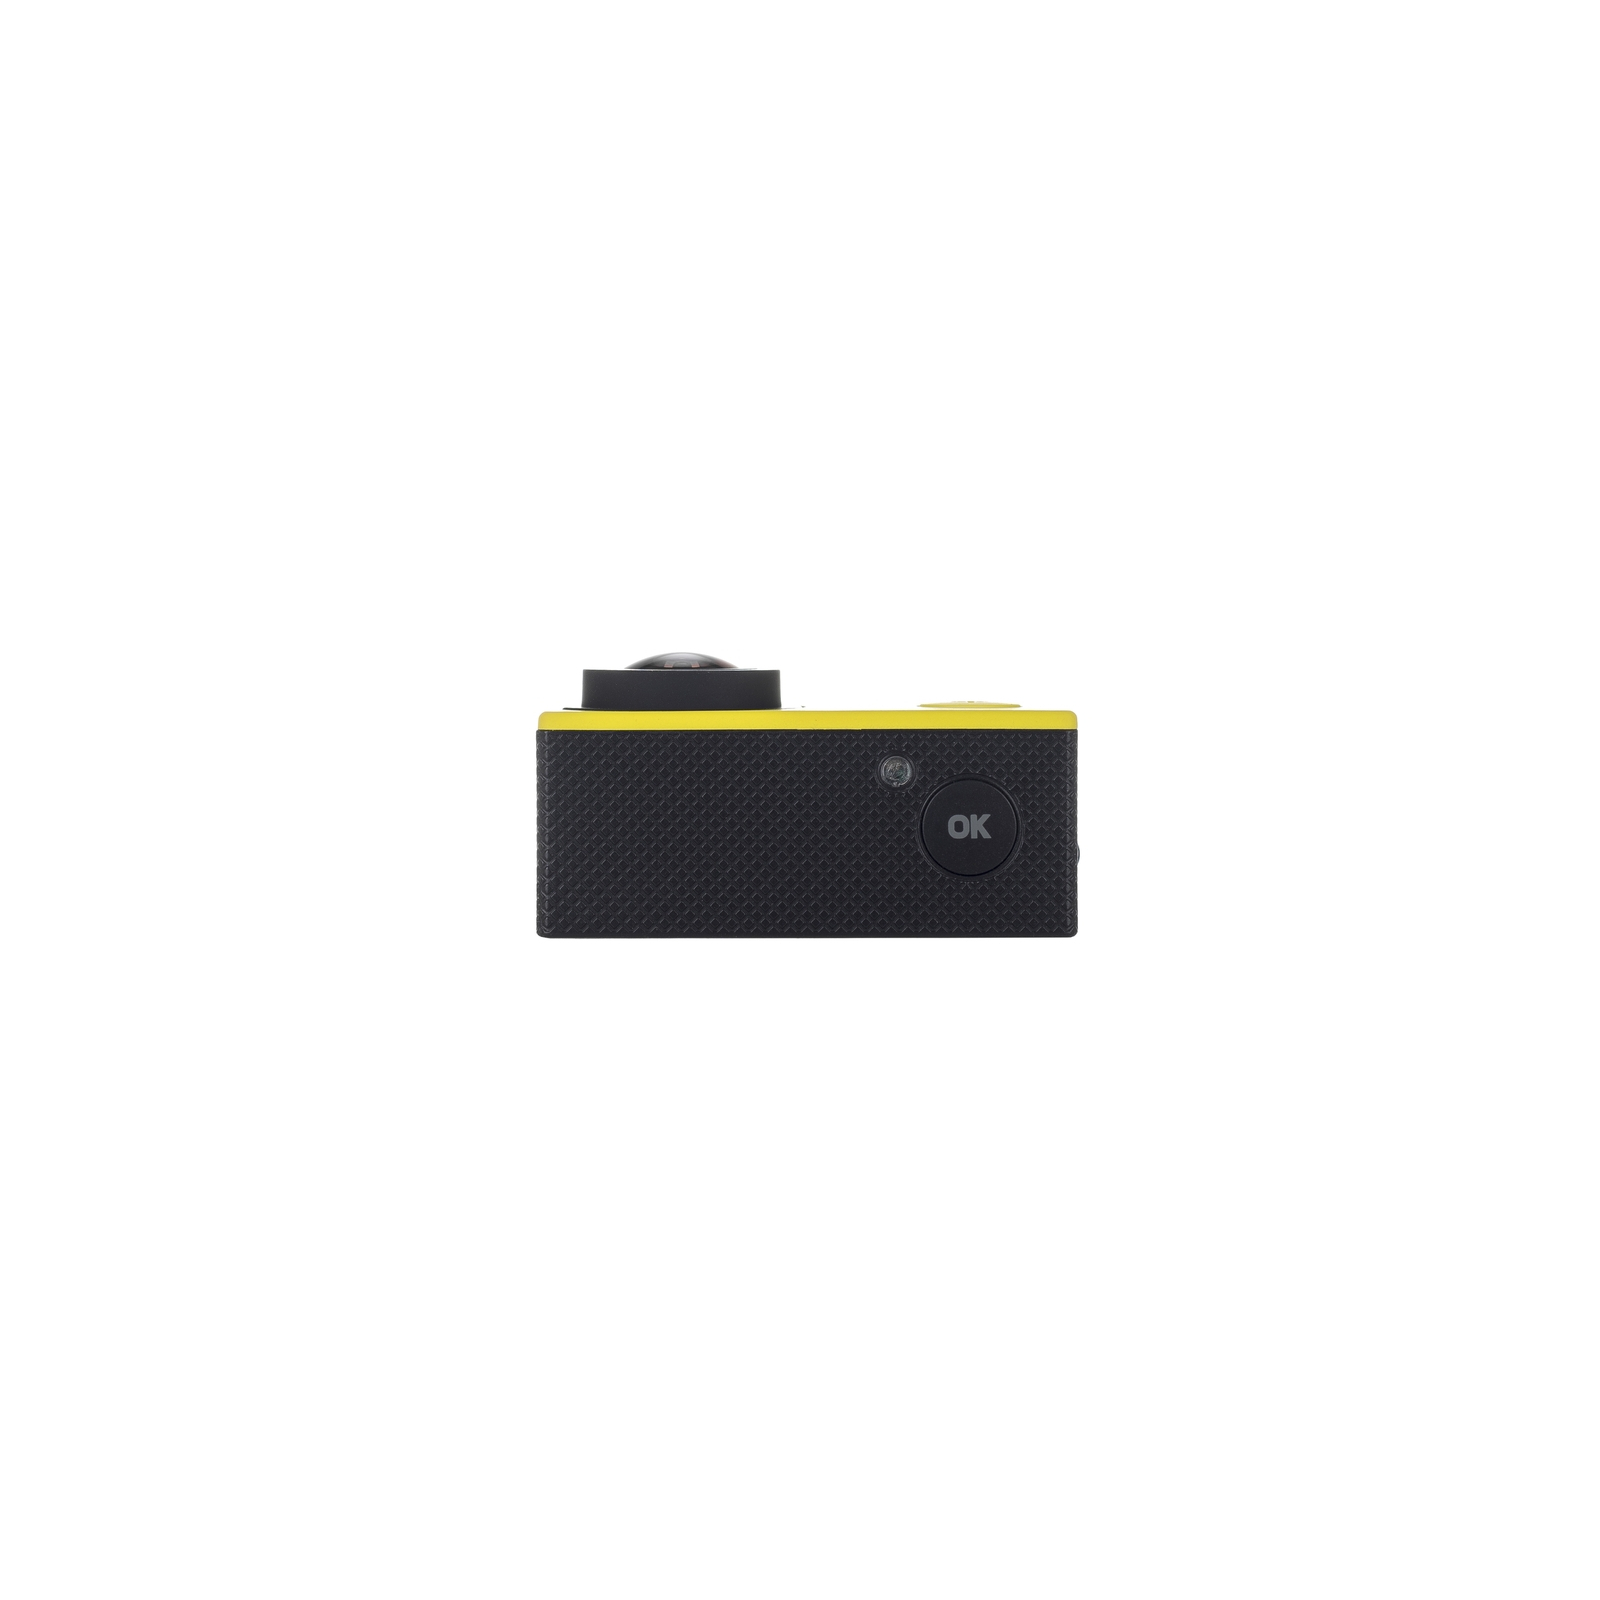 Екшн-камера Bravis A3 Yellow (BRAVISA3y) зображення 7